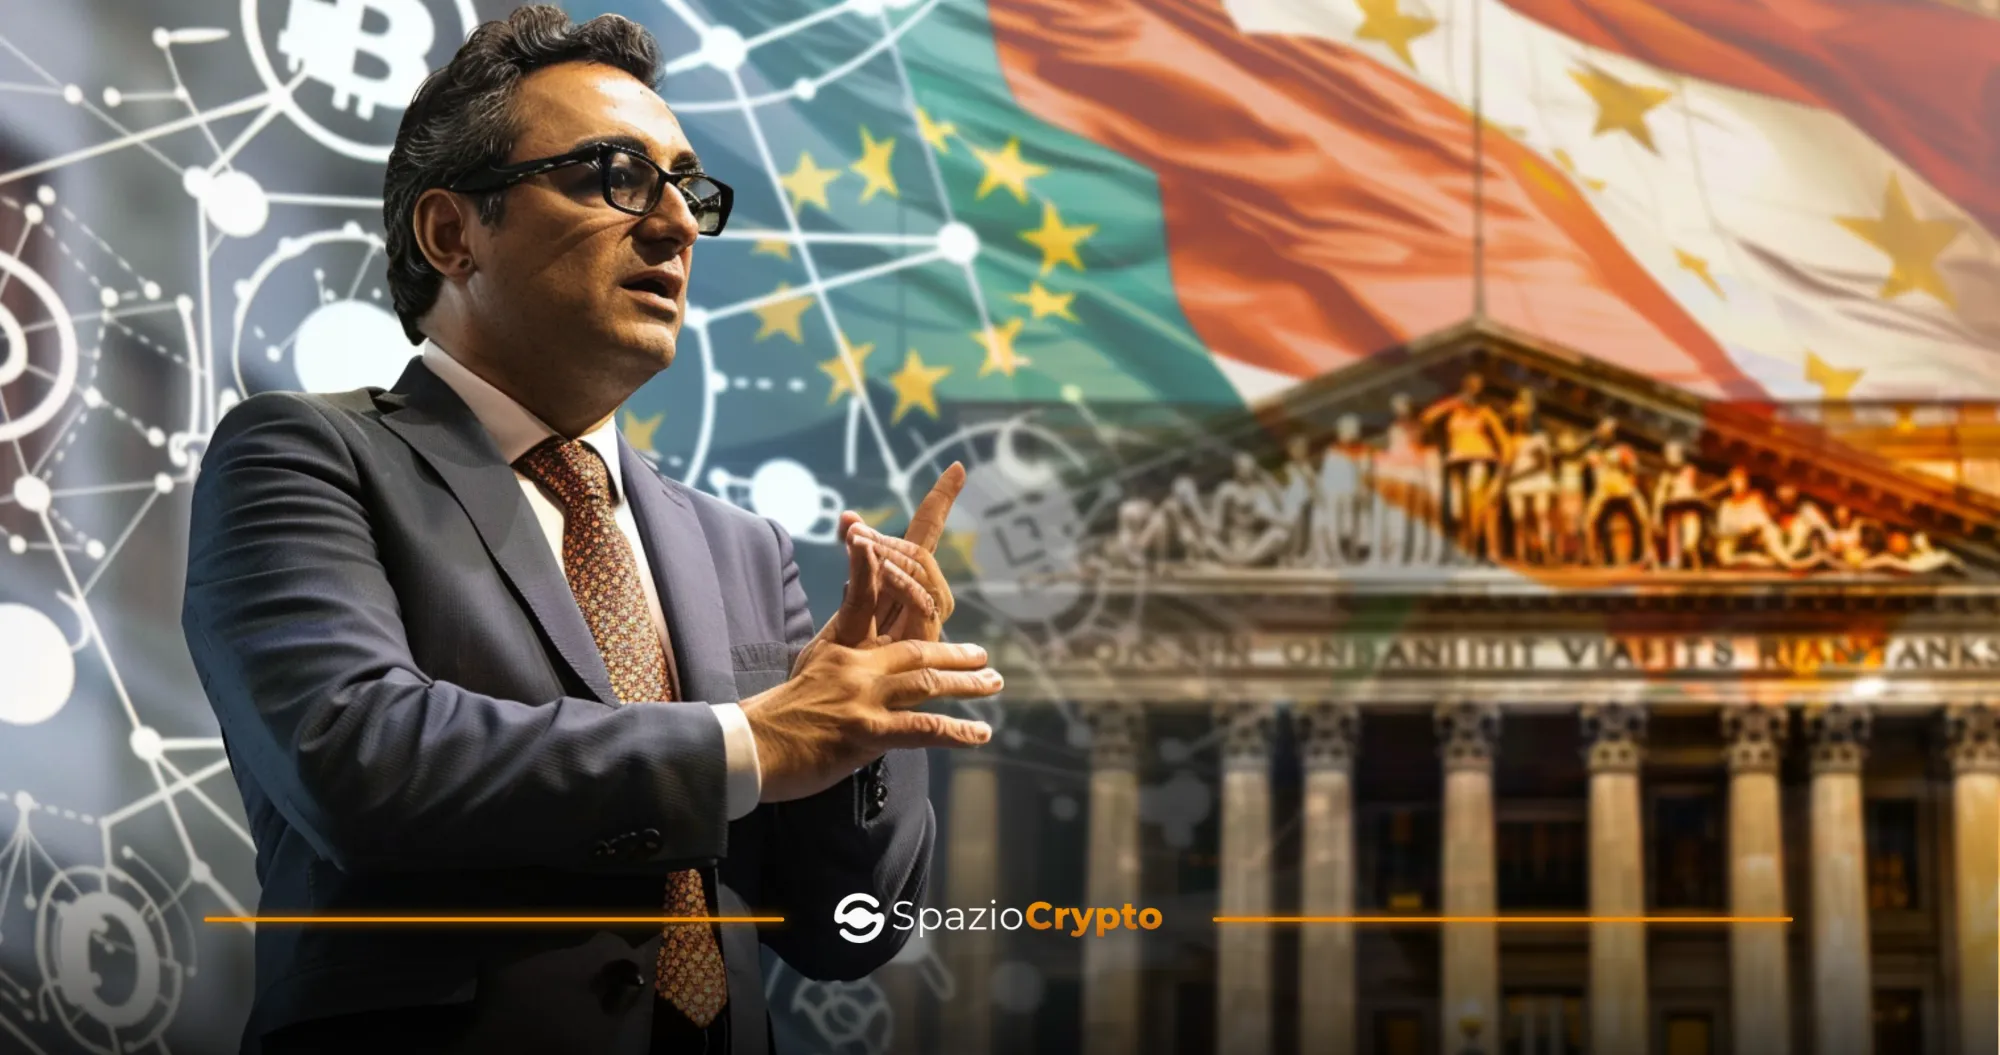 Les directives de la Banque d'Italie sur les crypto-monnaies attendues dans les prochains jours - Spaziocrypto